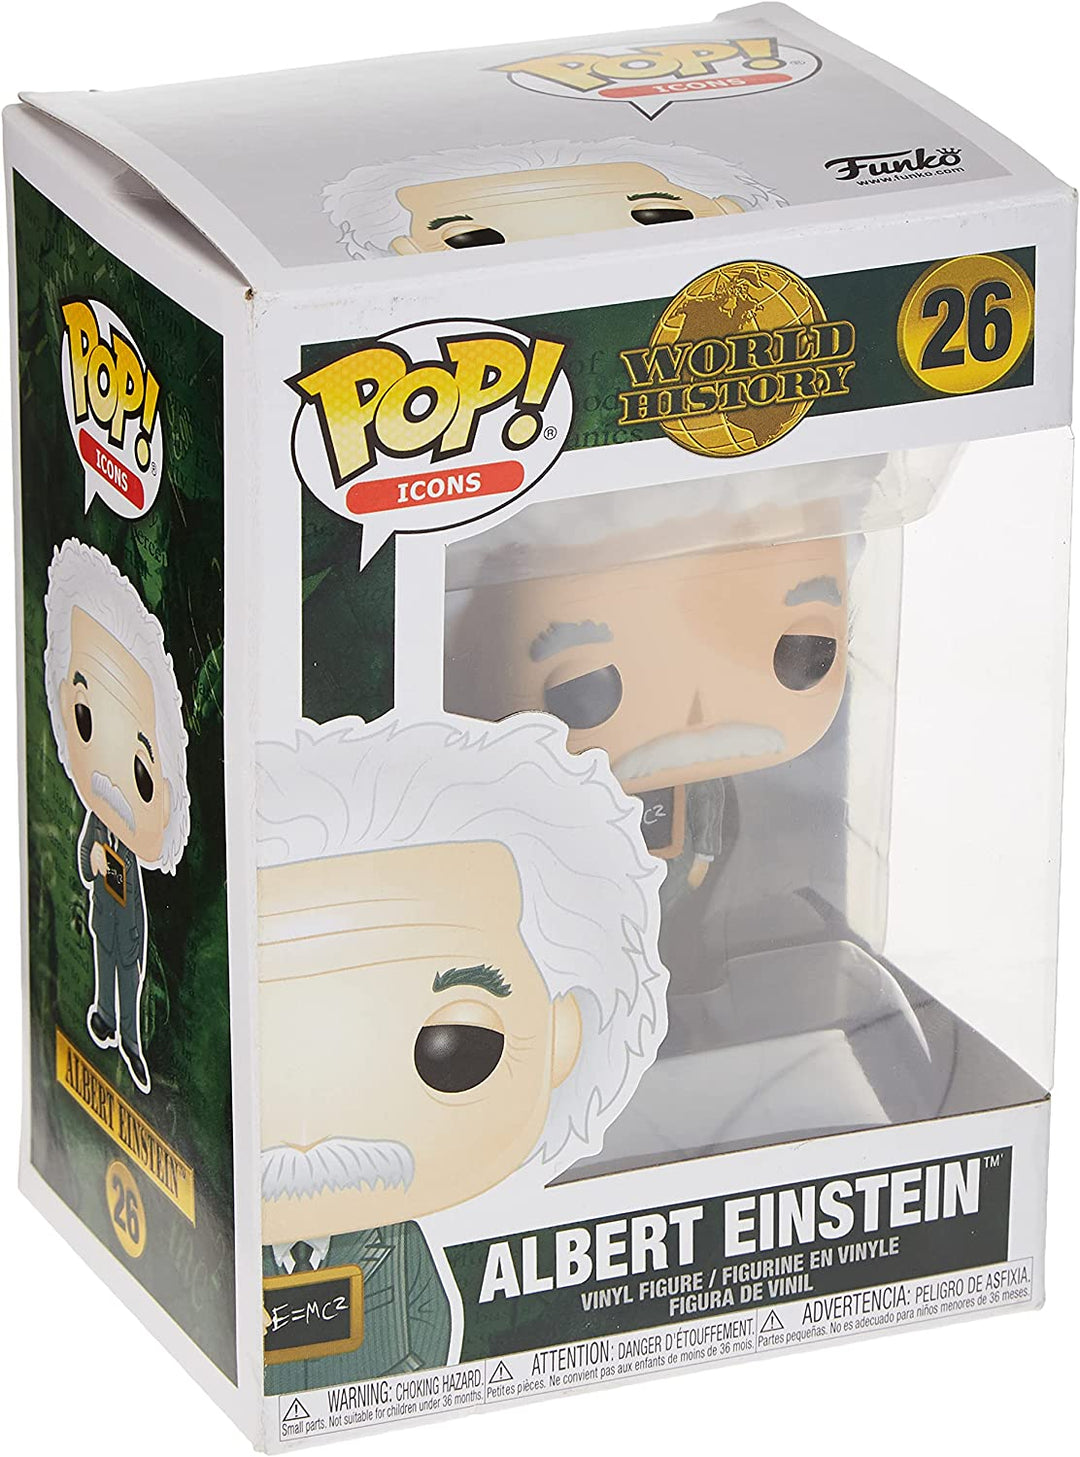 Albert Einstein Funko POP! Vinyl Figure